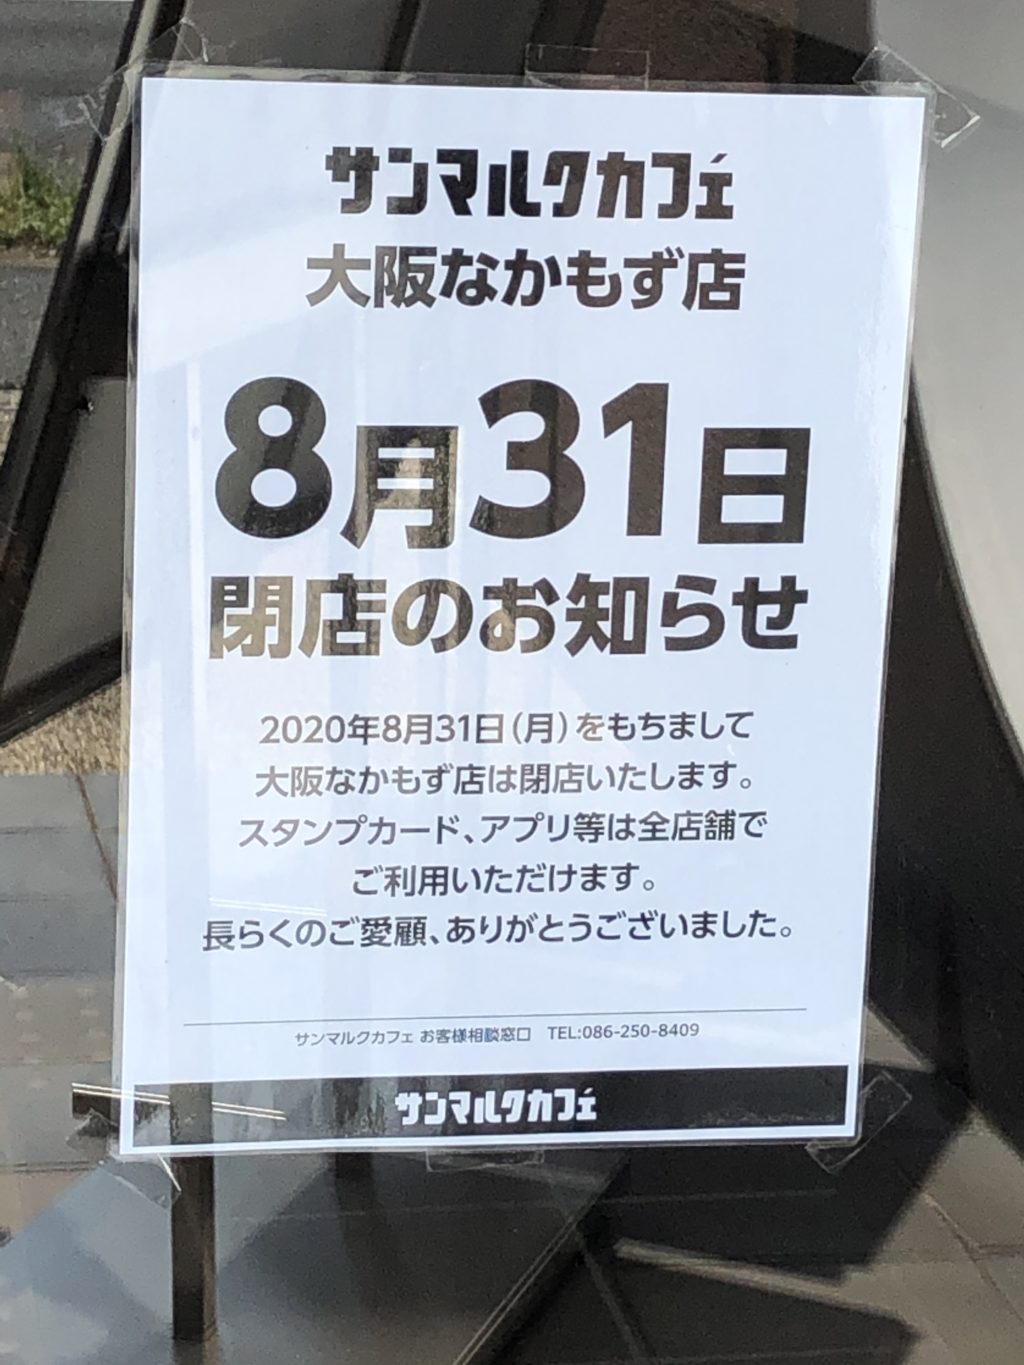 8 31閉店です 残念 堺市北区 サンマルクカフェ 大阪なかもず店 が閉店されます さかにゅー